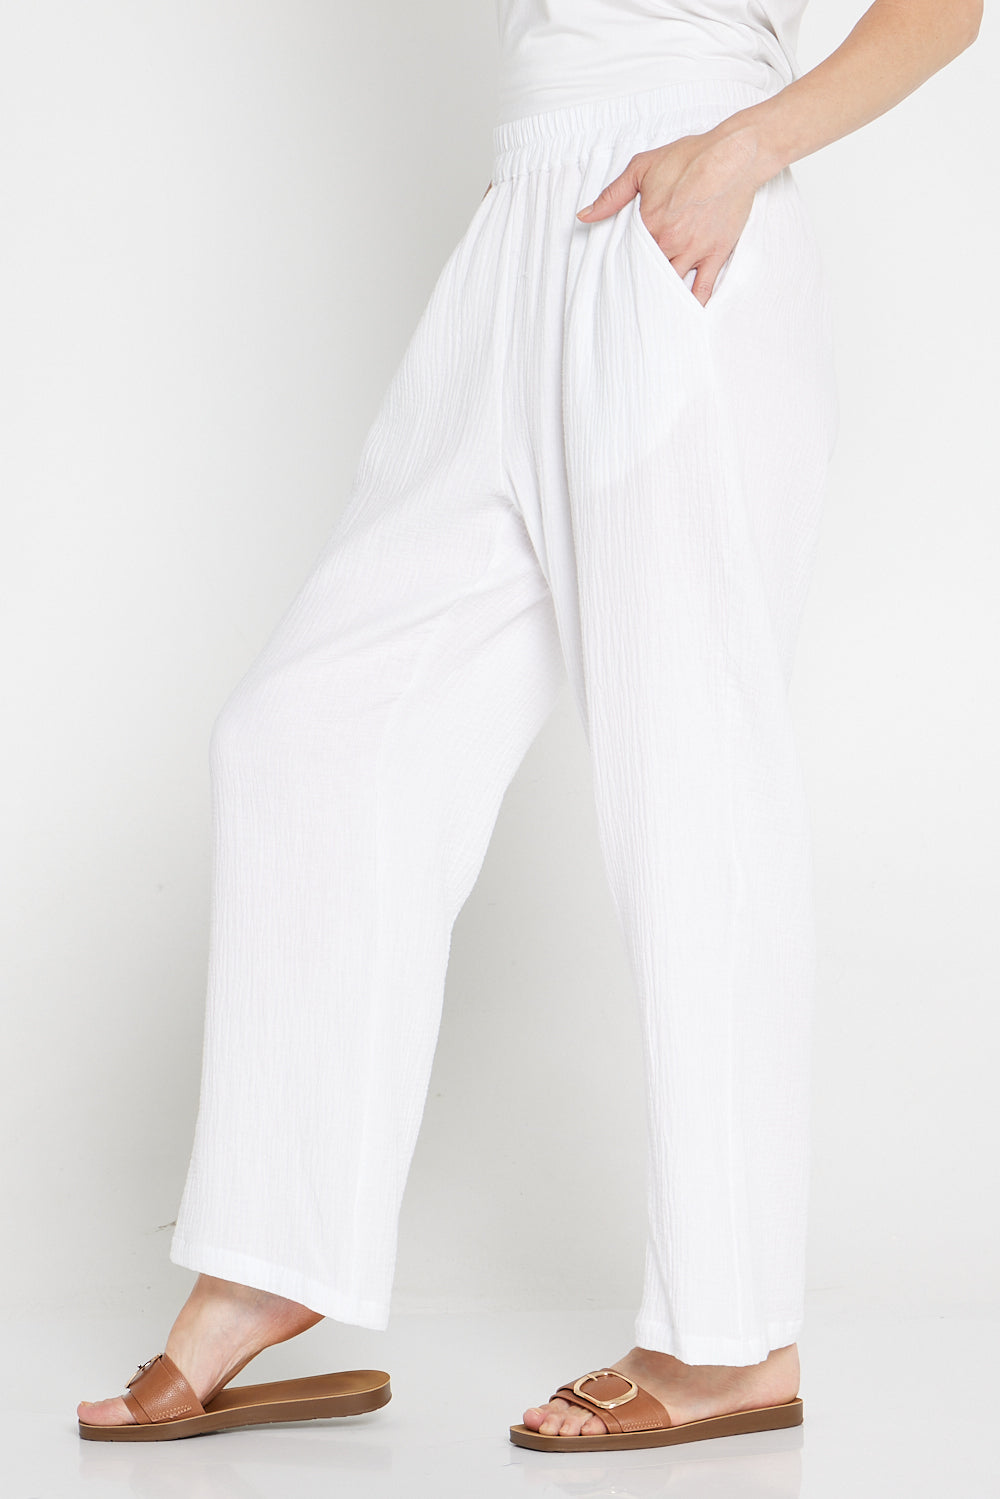 Athena Muslin Cotton Pants - White